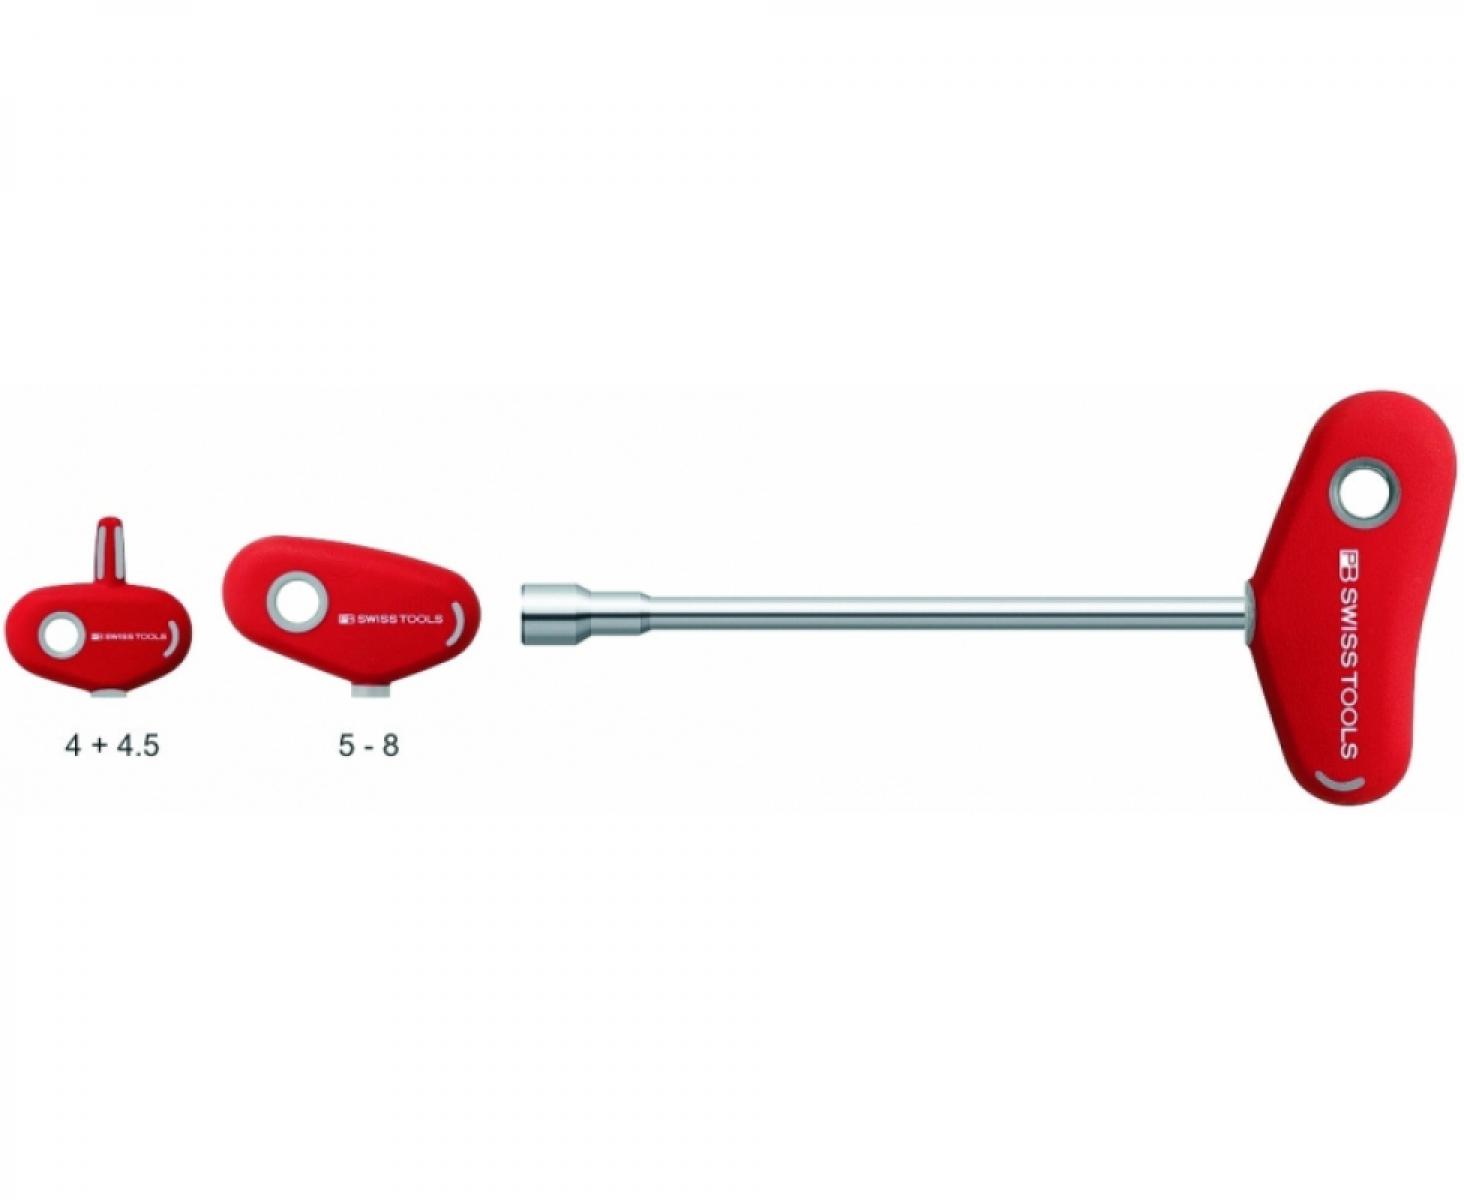 Отвертка-торцовый ключ HEX Nut с Т-образной ручкой PB Swiss Tools PB 202.4,5-135 M4.5